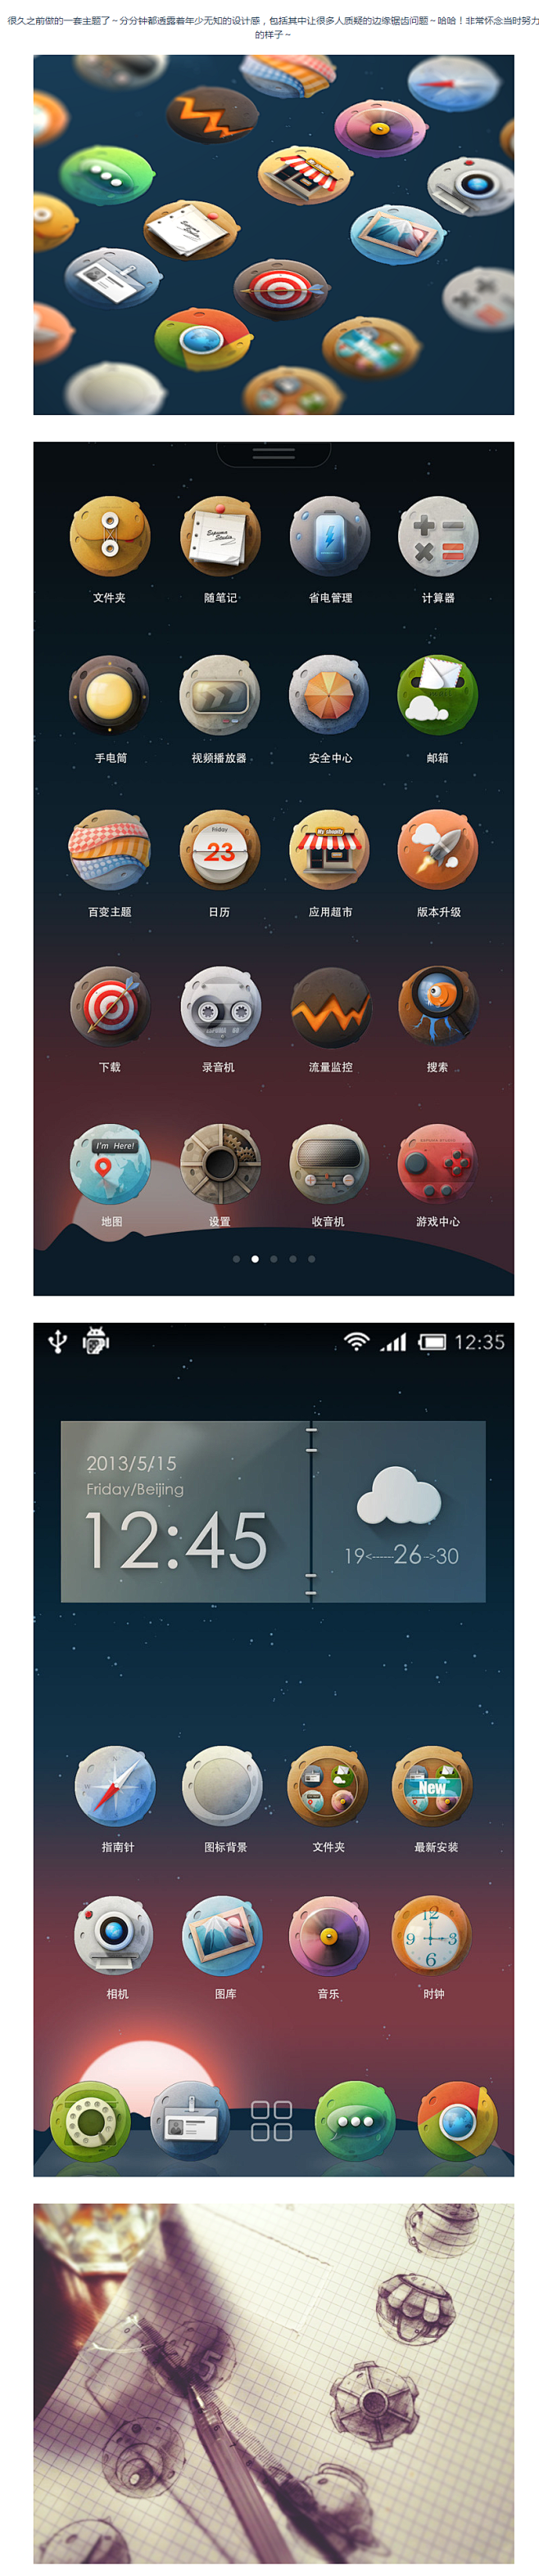 未来星球icons-UI中国-专业界面设...